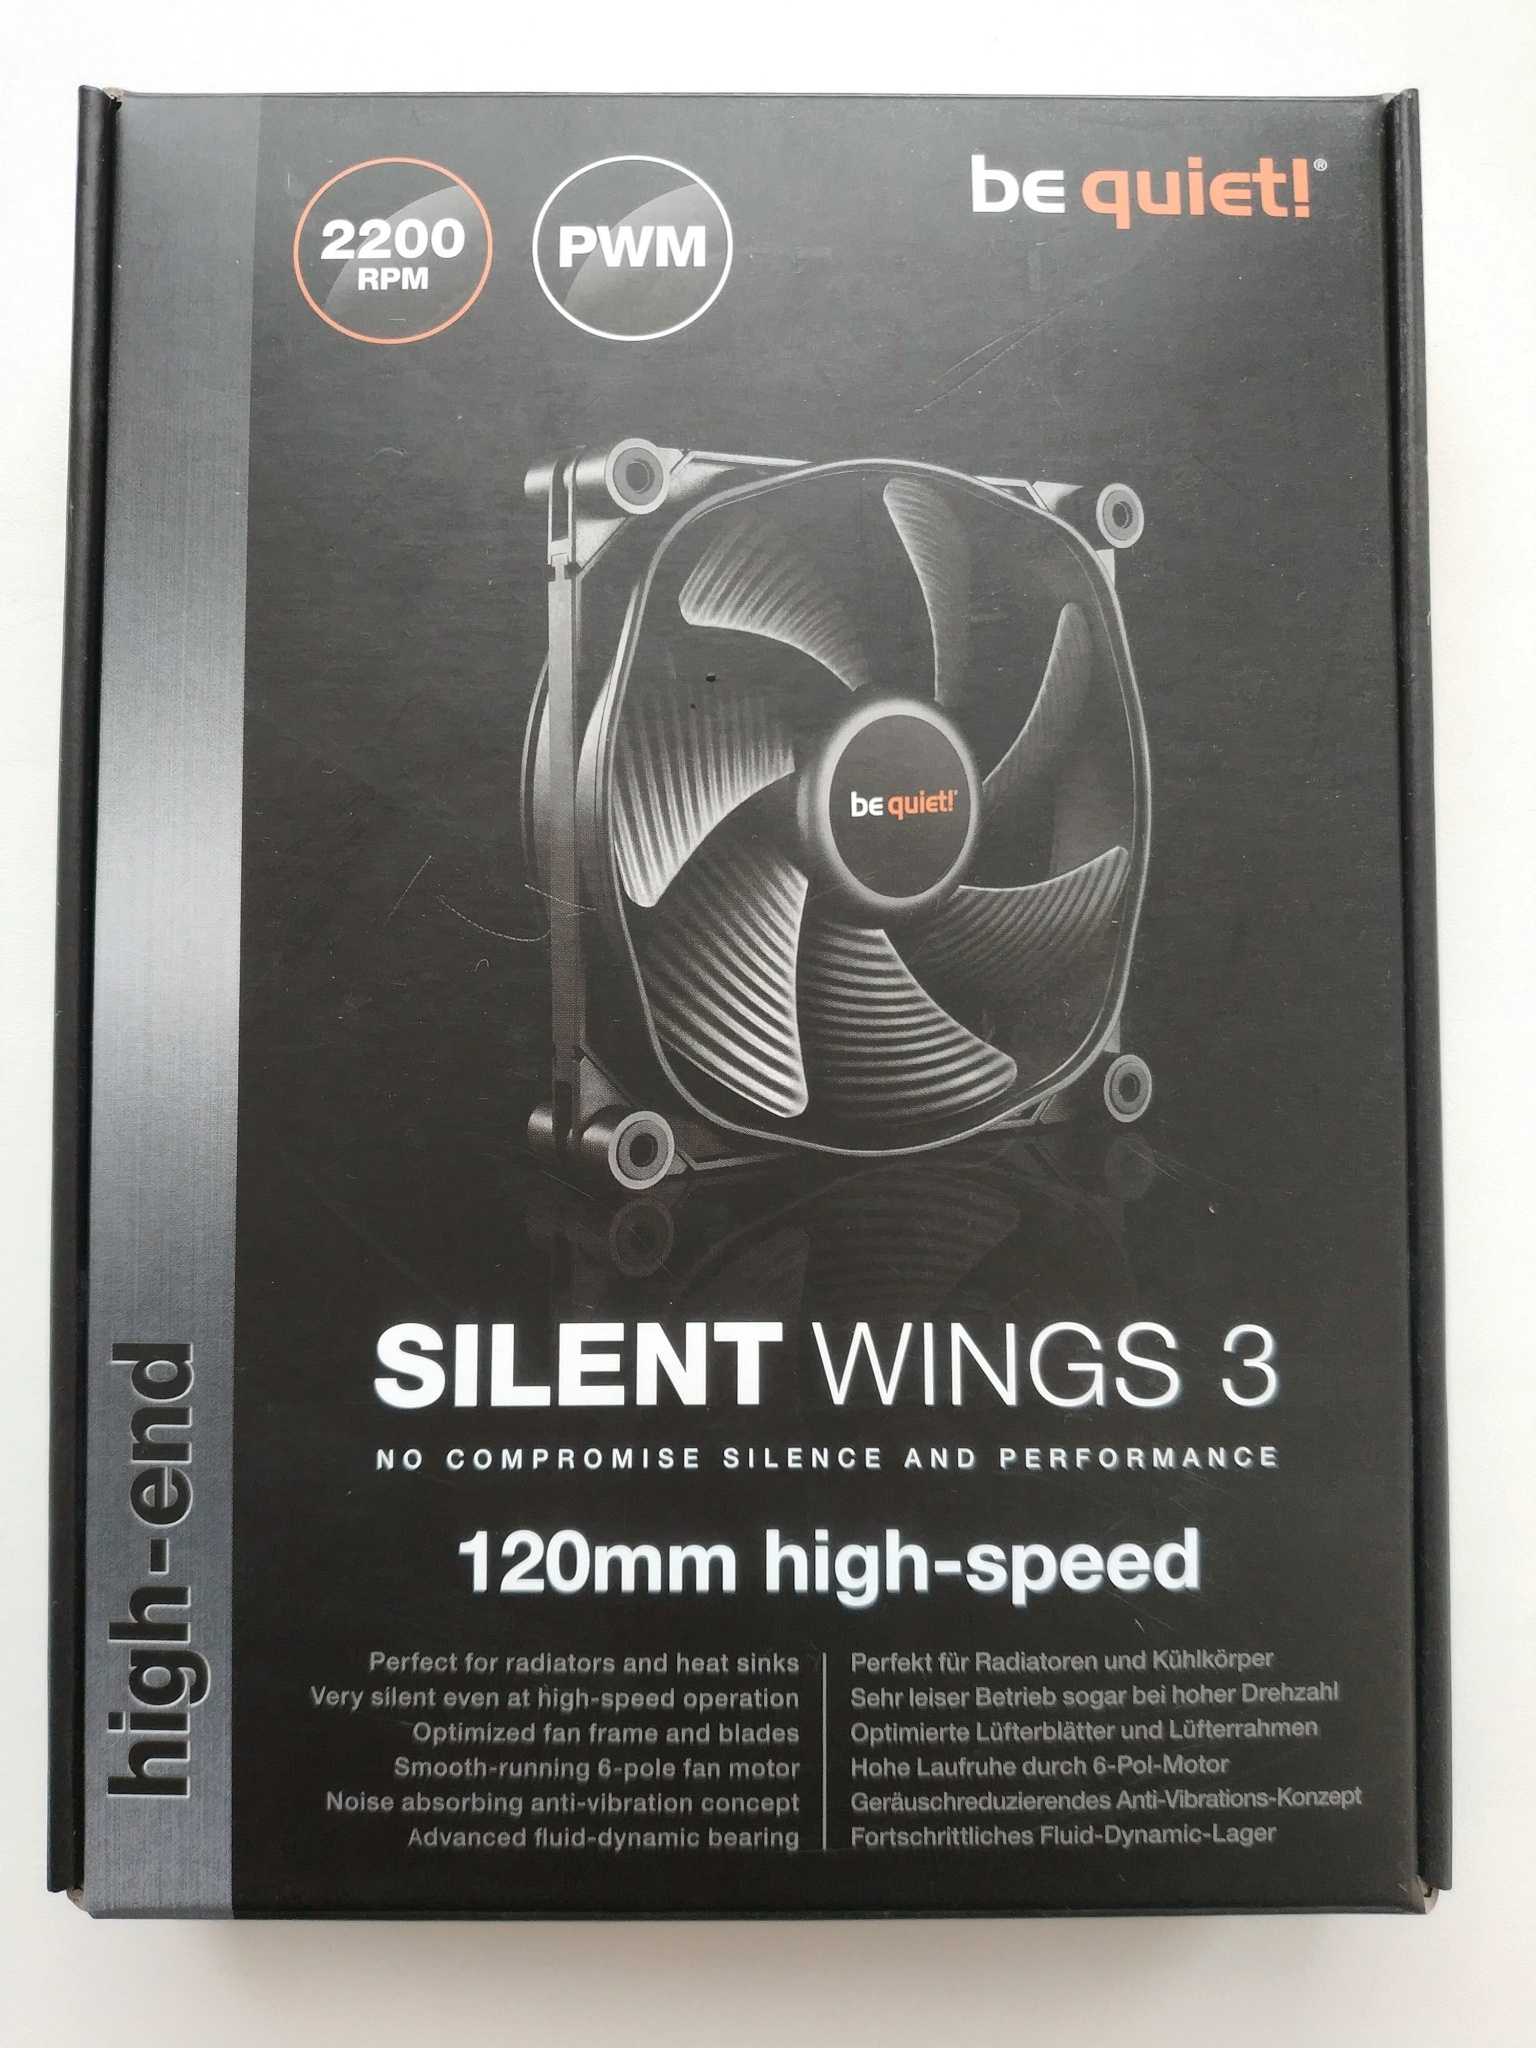 Be quiet! silentwings 3 (bl070) отзывы покупателей и специалистов на отзовик